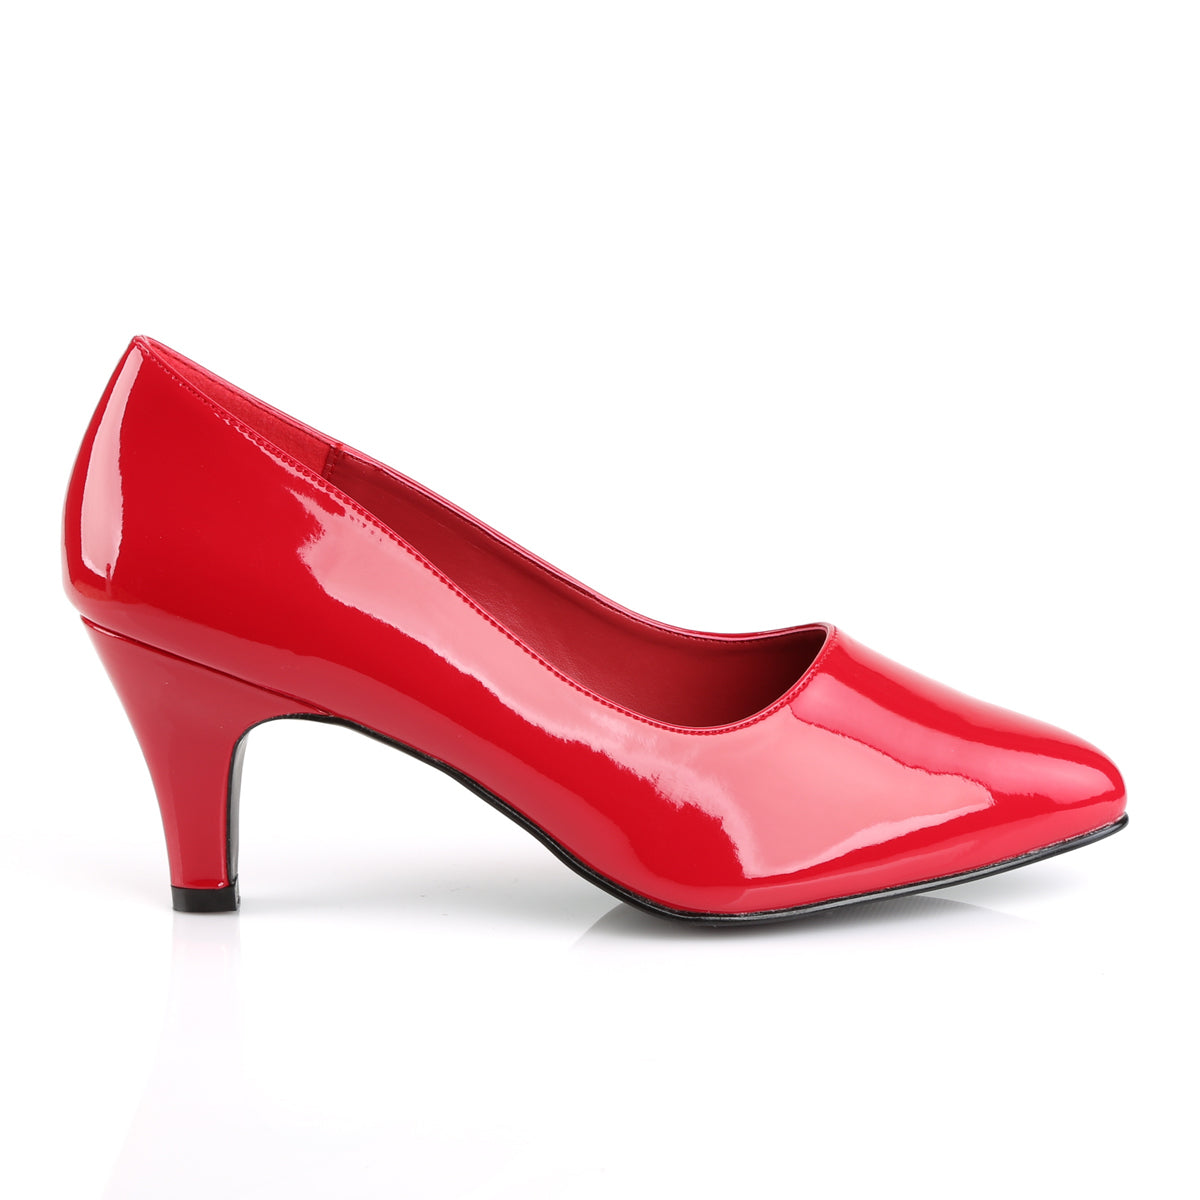 DIVINE-420 Pleaser Pink Label 3" Heel Red Fetish Footwear-Pleaser Pink Label- Large Size Ladies Shoes